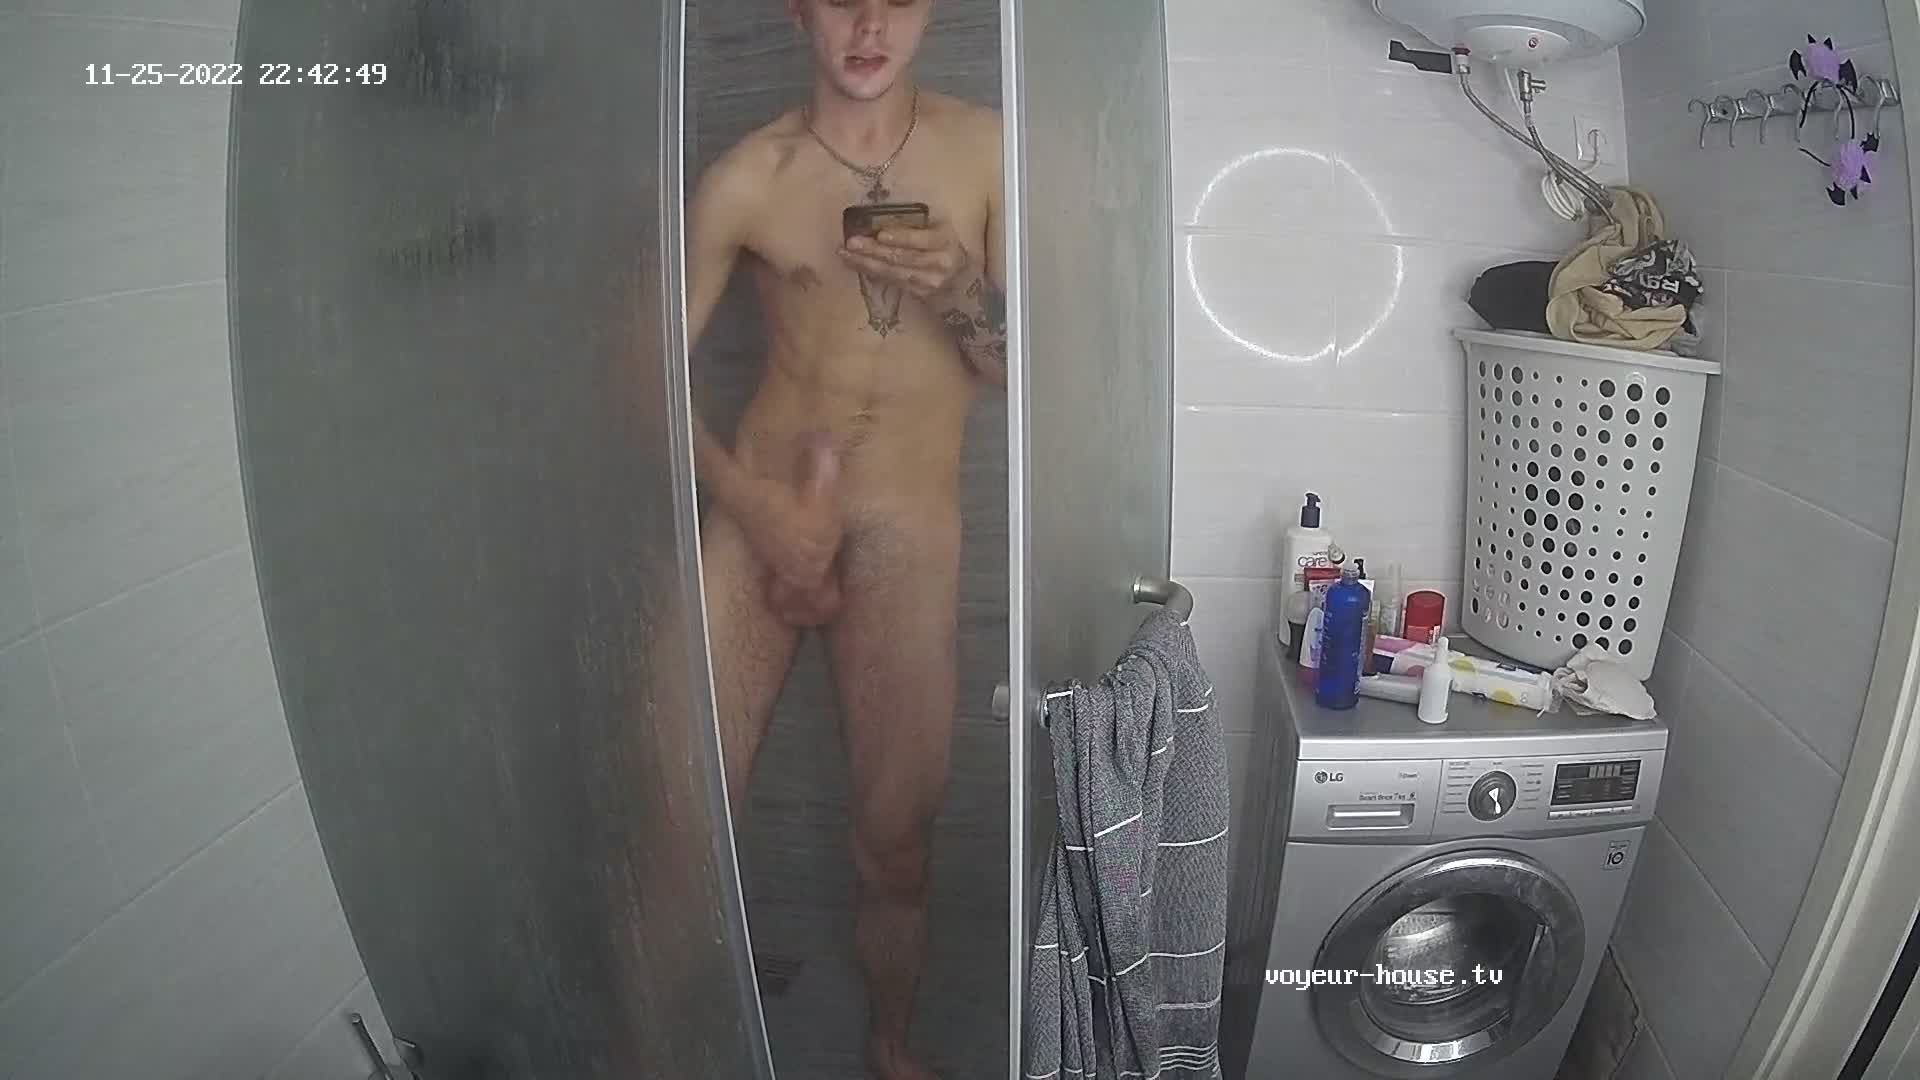 Artem jerking off in the shower 25 Nov 2022